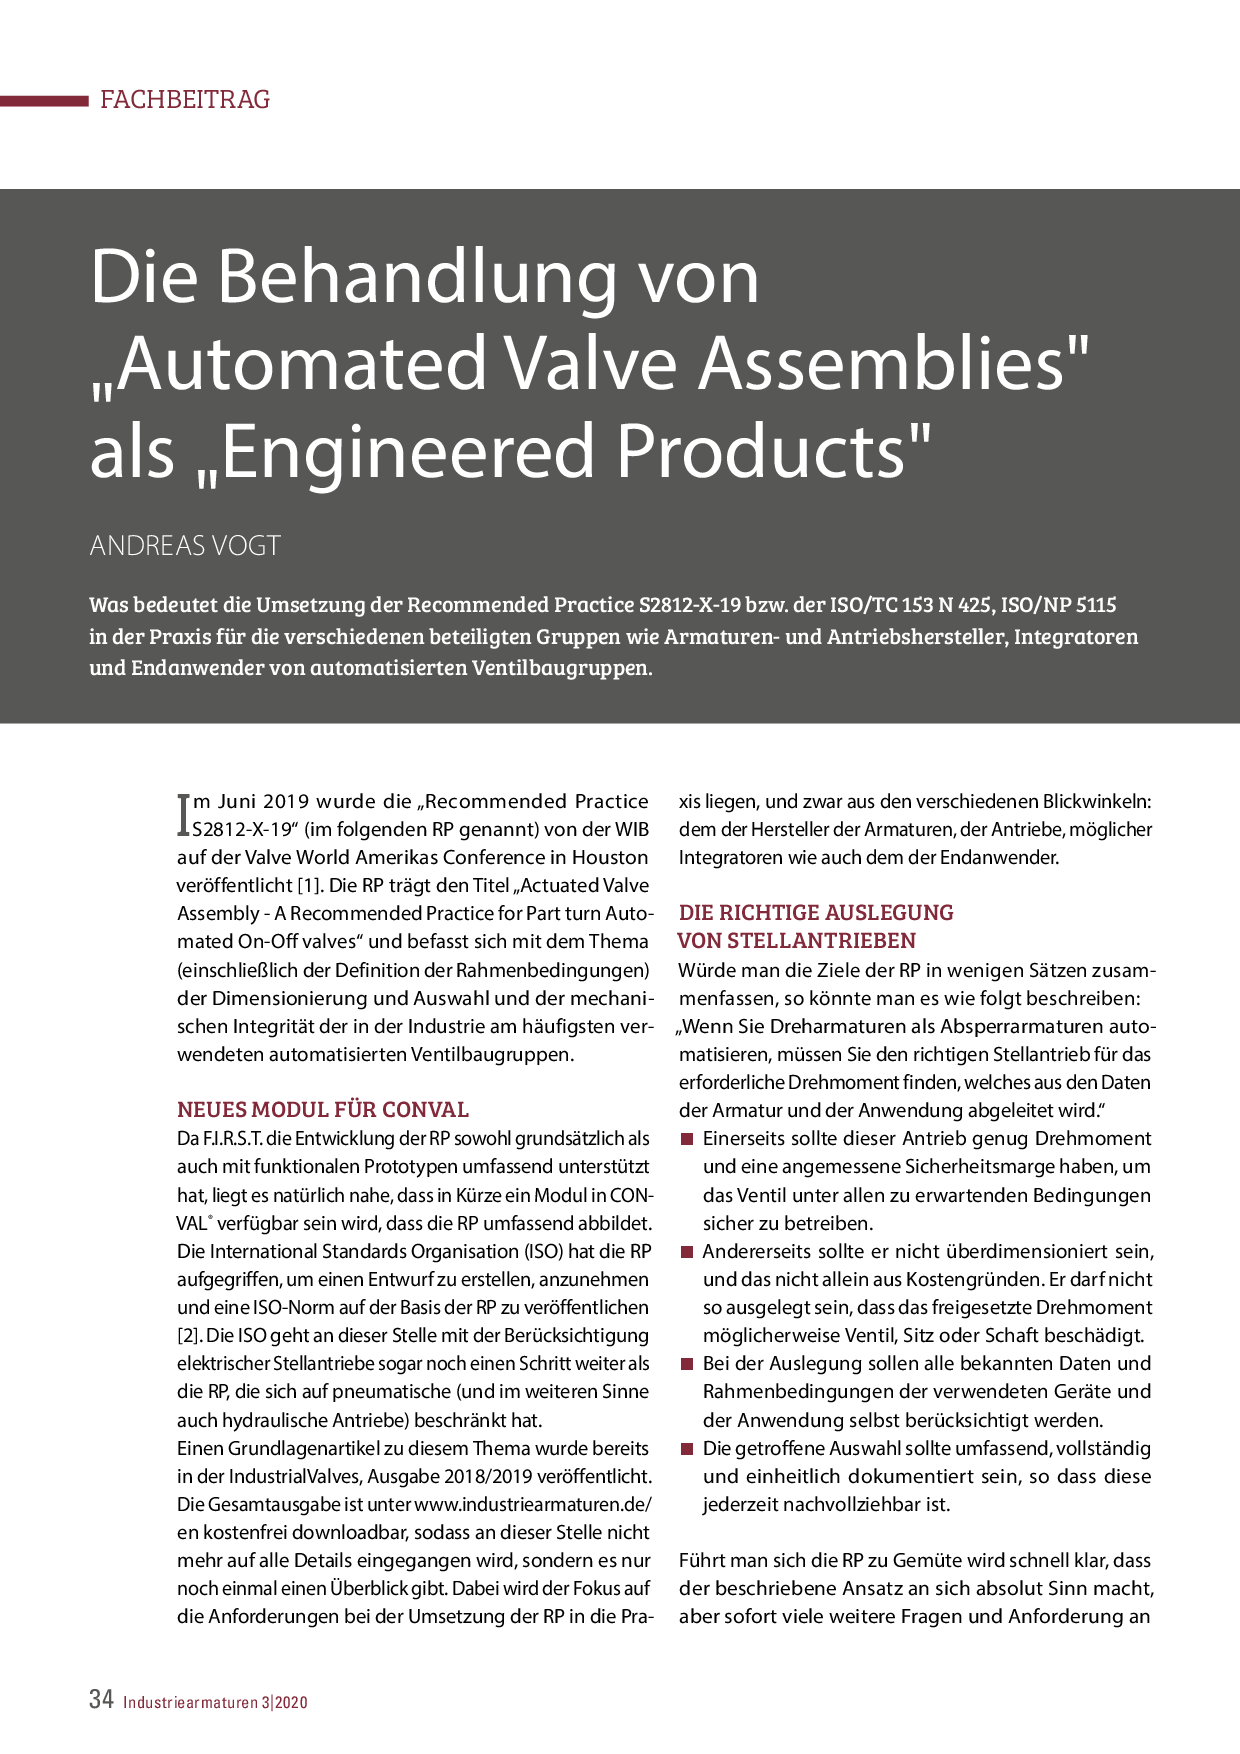 Die Behandlung von „Automated Valve Assemblies“ als „Engineered Products“